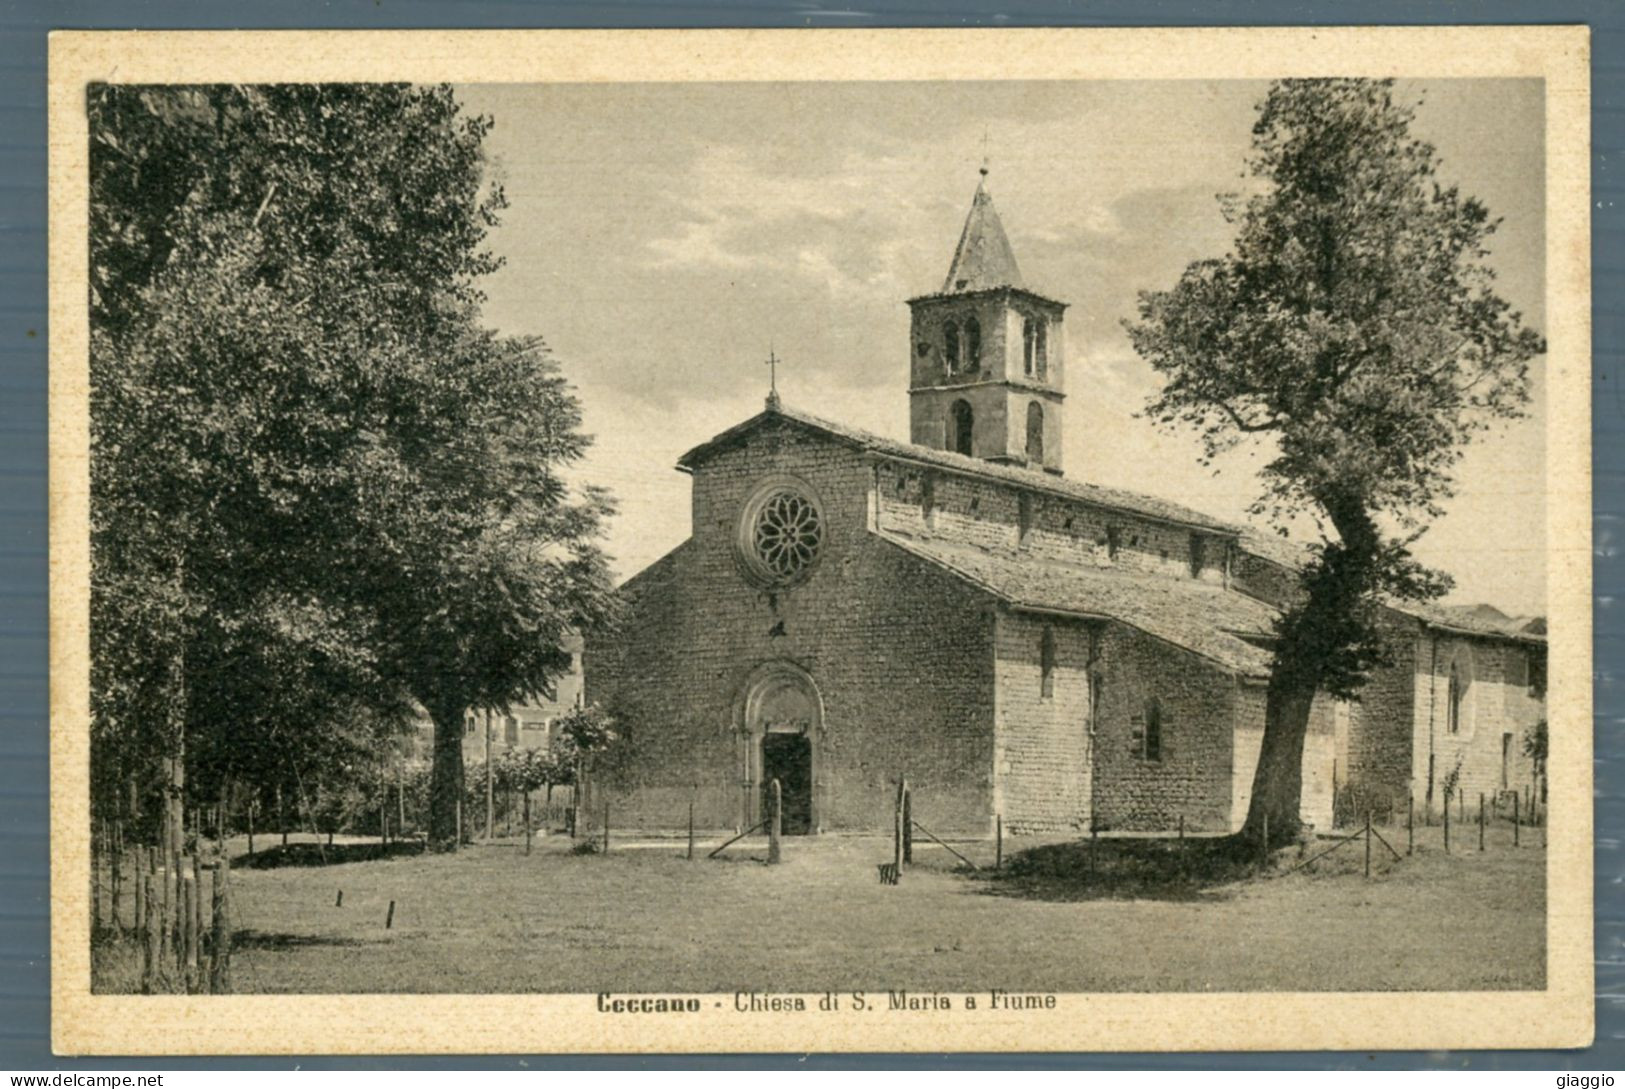 °°° Cartolina - Ceccano Chiesa Di S. Maria A Fiume - Formato Piccolo - Nuova °°° - Frosinone